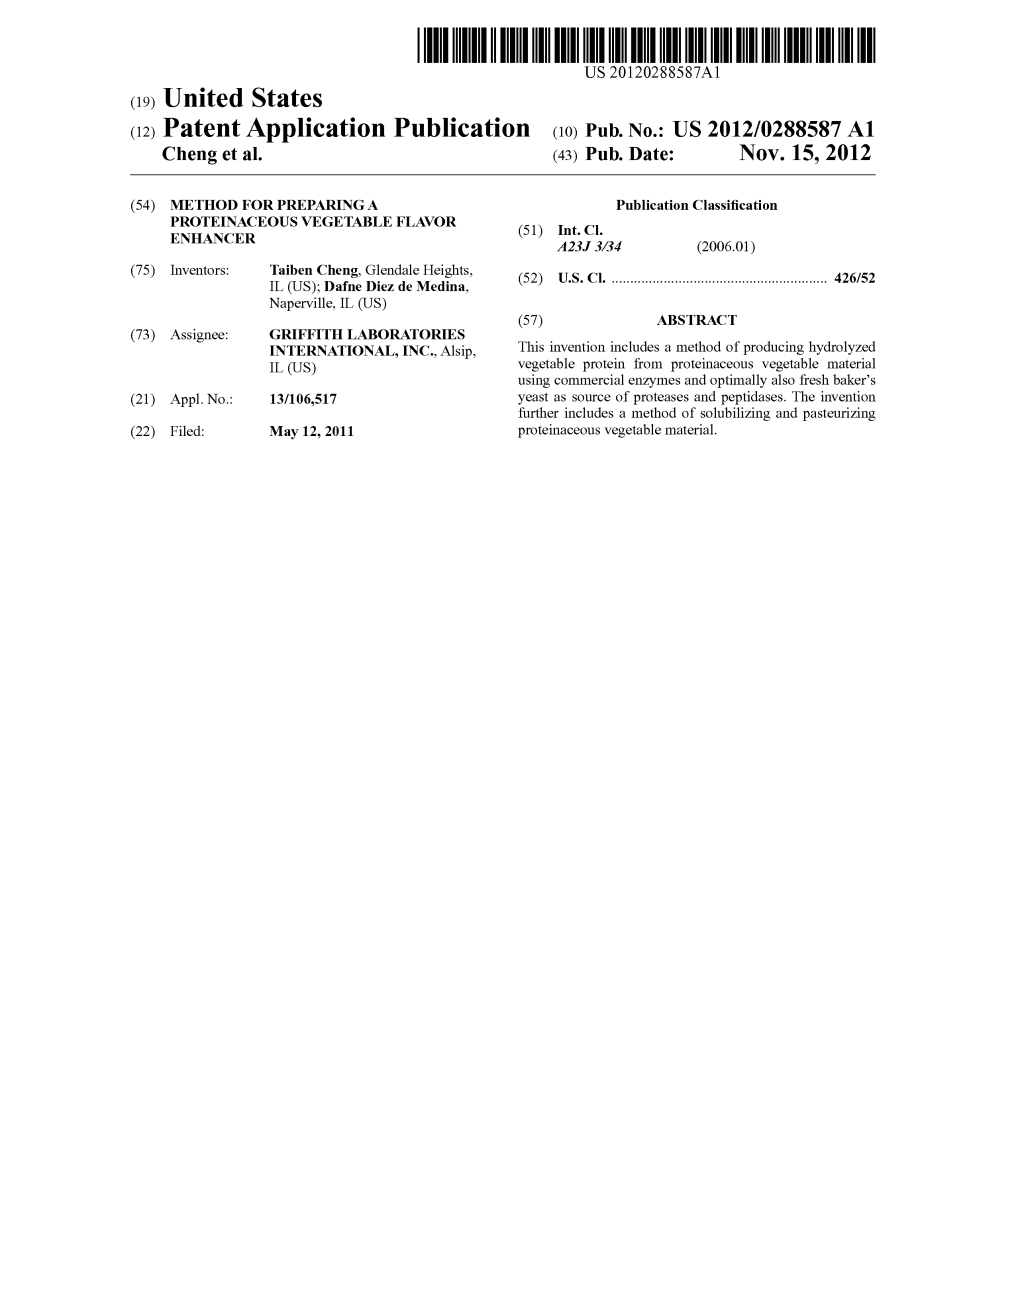 (12) Patent Application Publication (10) Pub. No.: US 2012/0288587 A1 Cheng Et Al